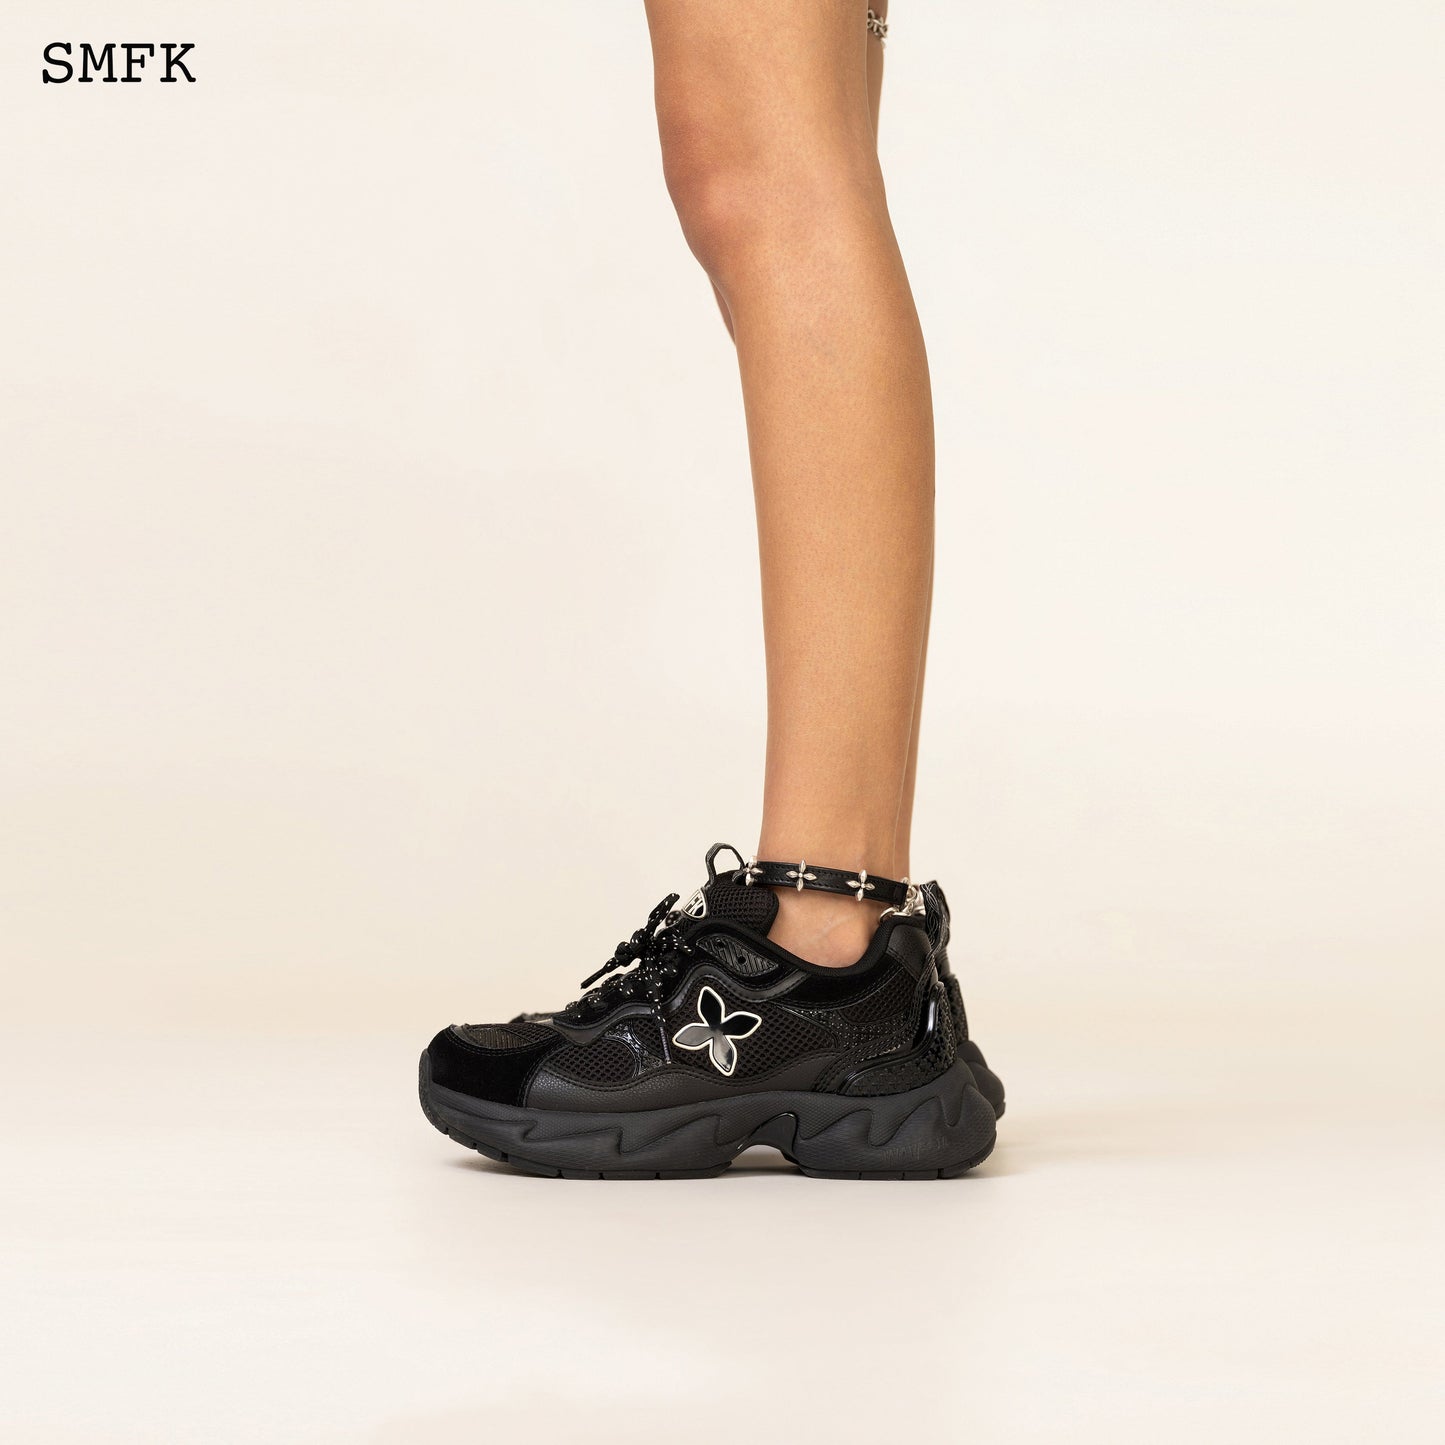 SMFK Compass Black Garden Leather Anklet